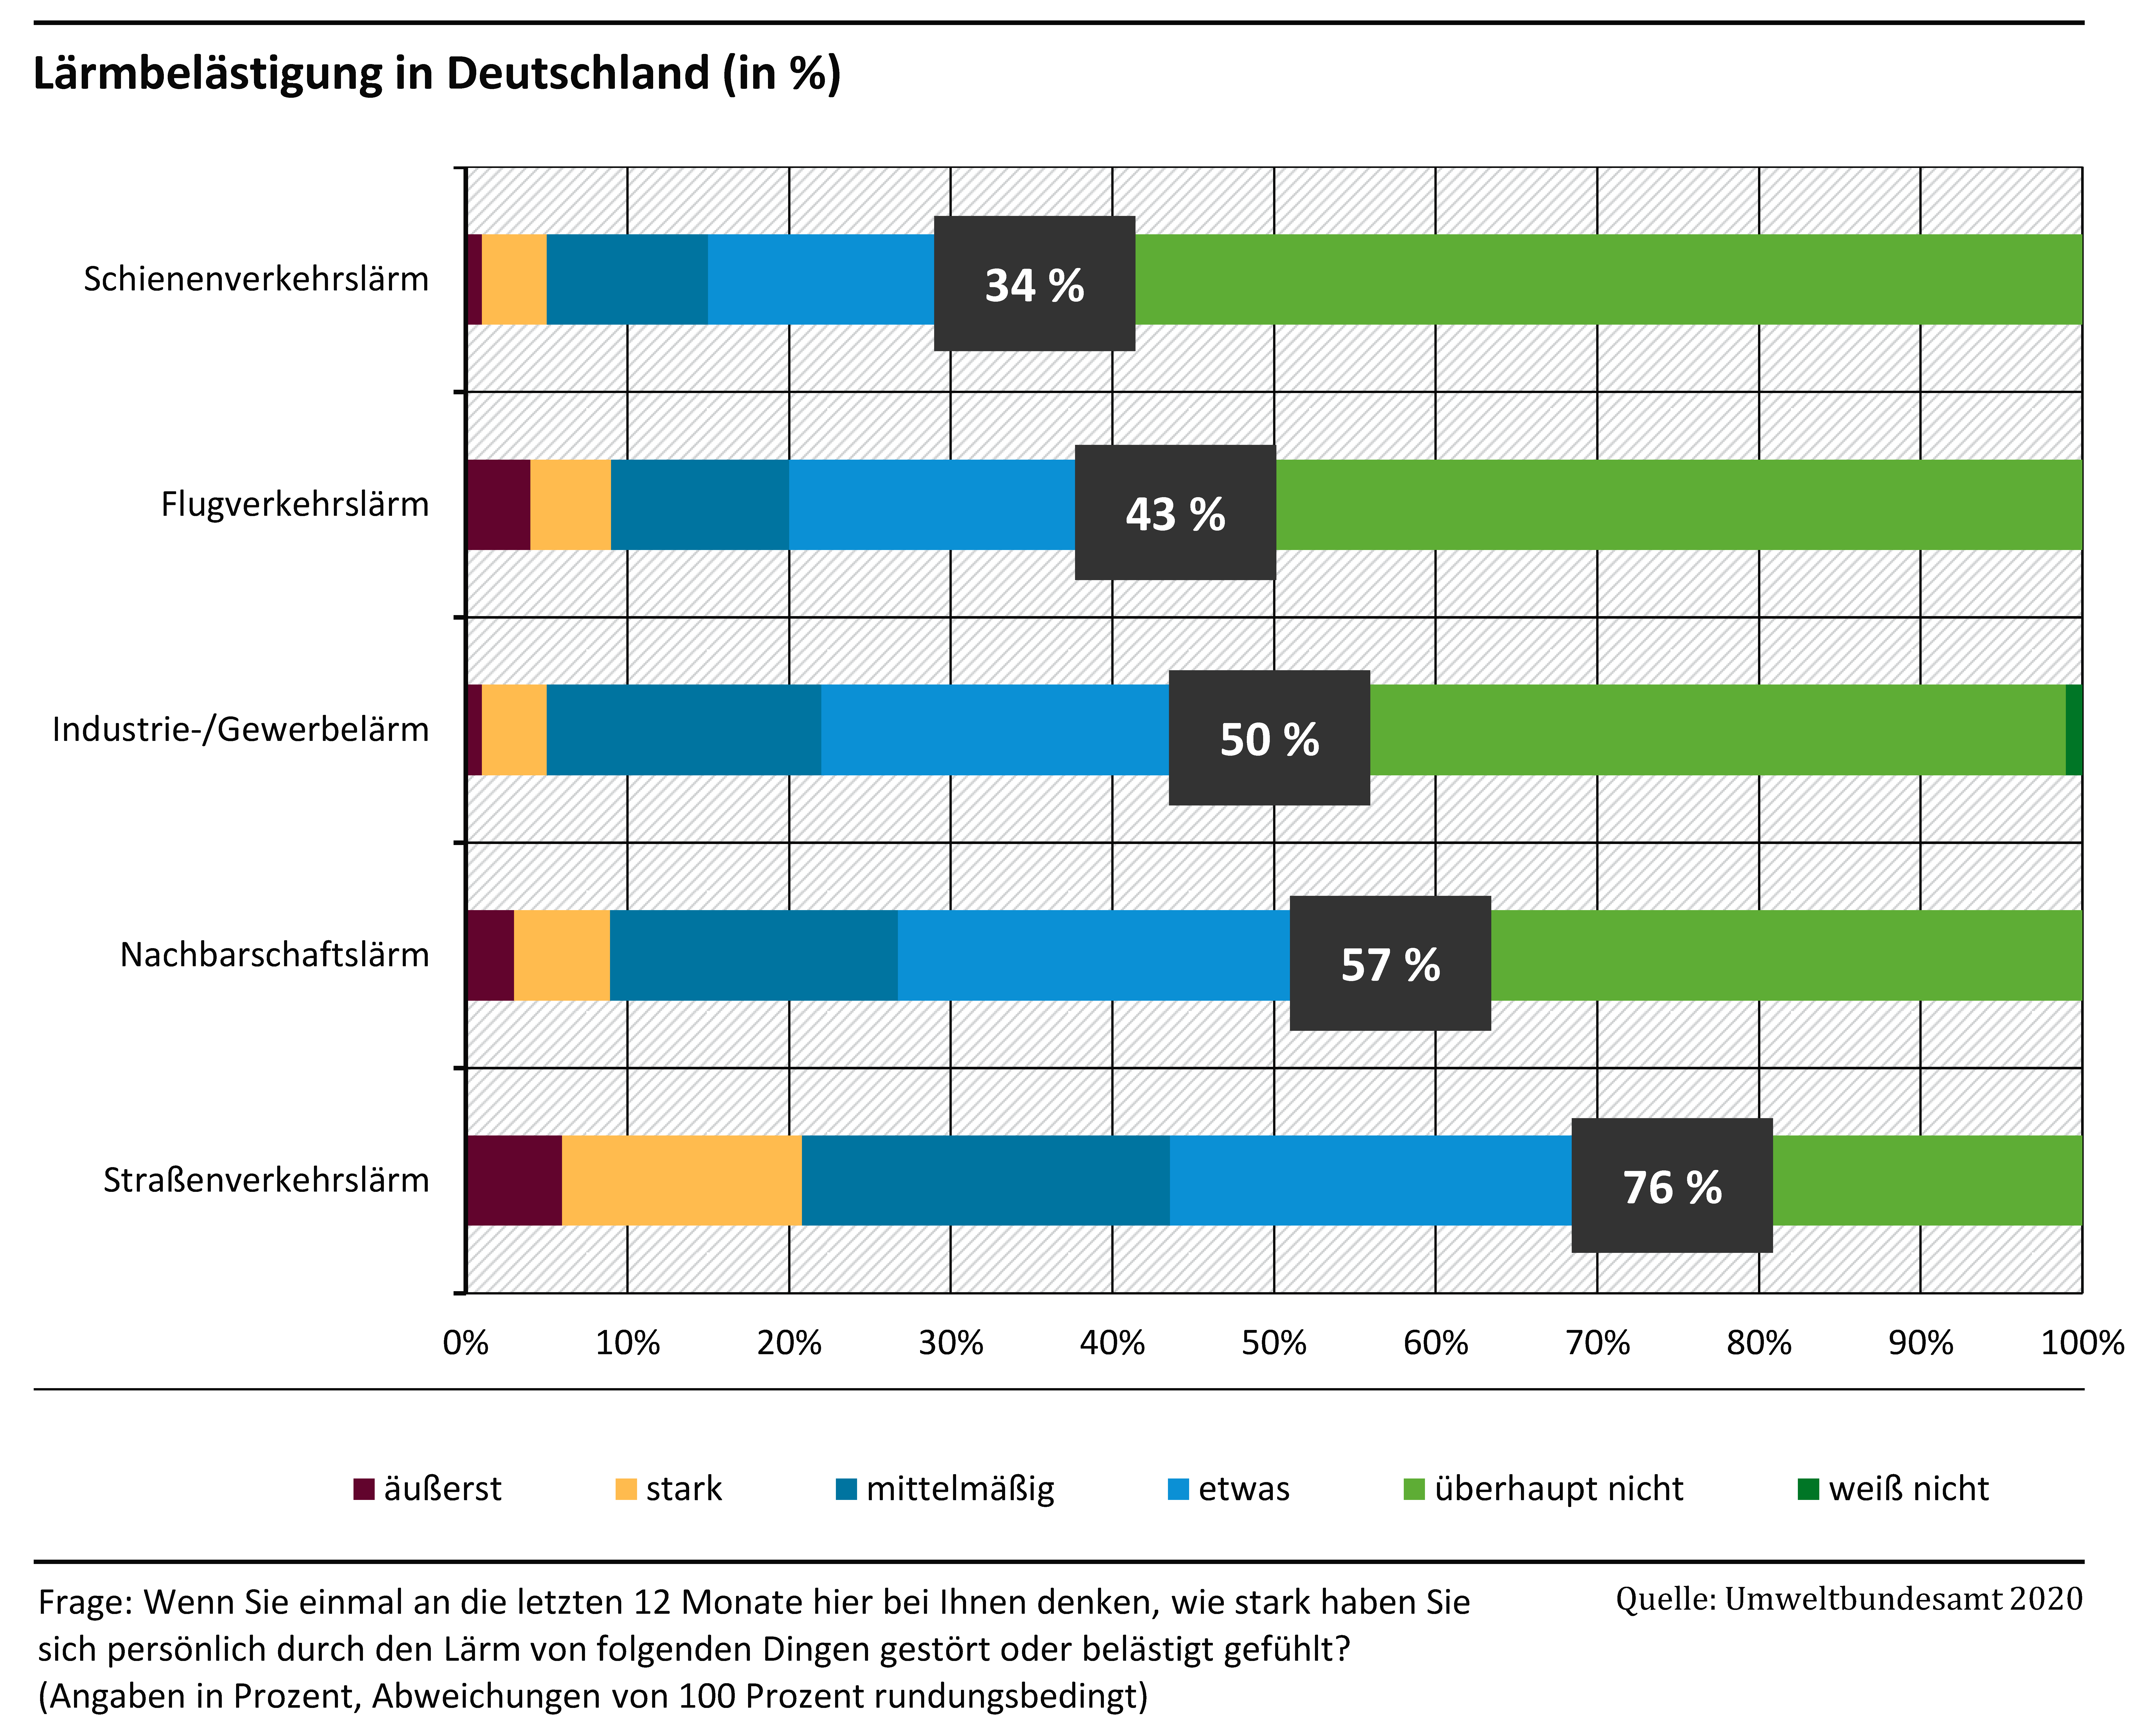 Grafik der Lärmbelästigung in Deutschland: Die meisten Menschen fühlen sich vom Straßenverkehrslärm belästigt (etwa 54%). Es folgen Nachbarschaftslärm (ca. 40%), Fluglärm (ca. 21%), Industrie-/Gewerbe- (ca. 21%) und Schienenverkehrslärm (ca. 17%).